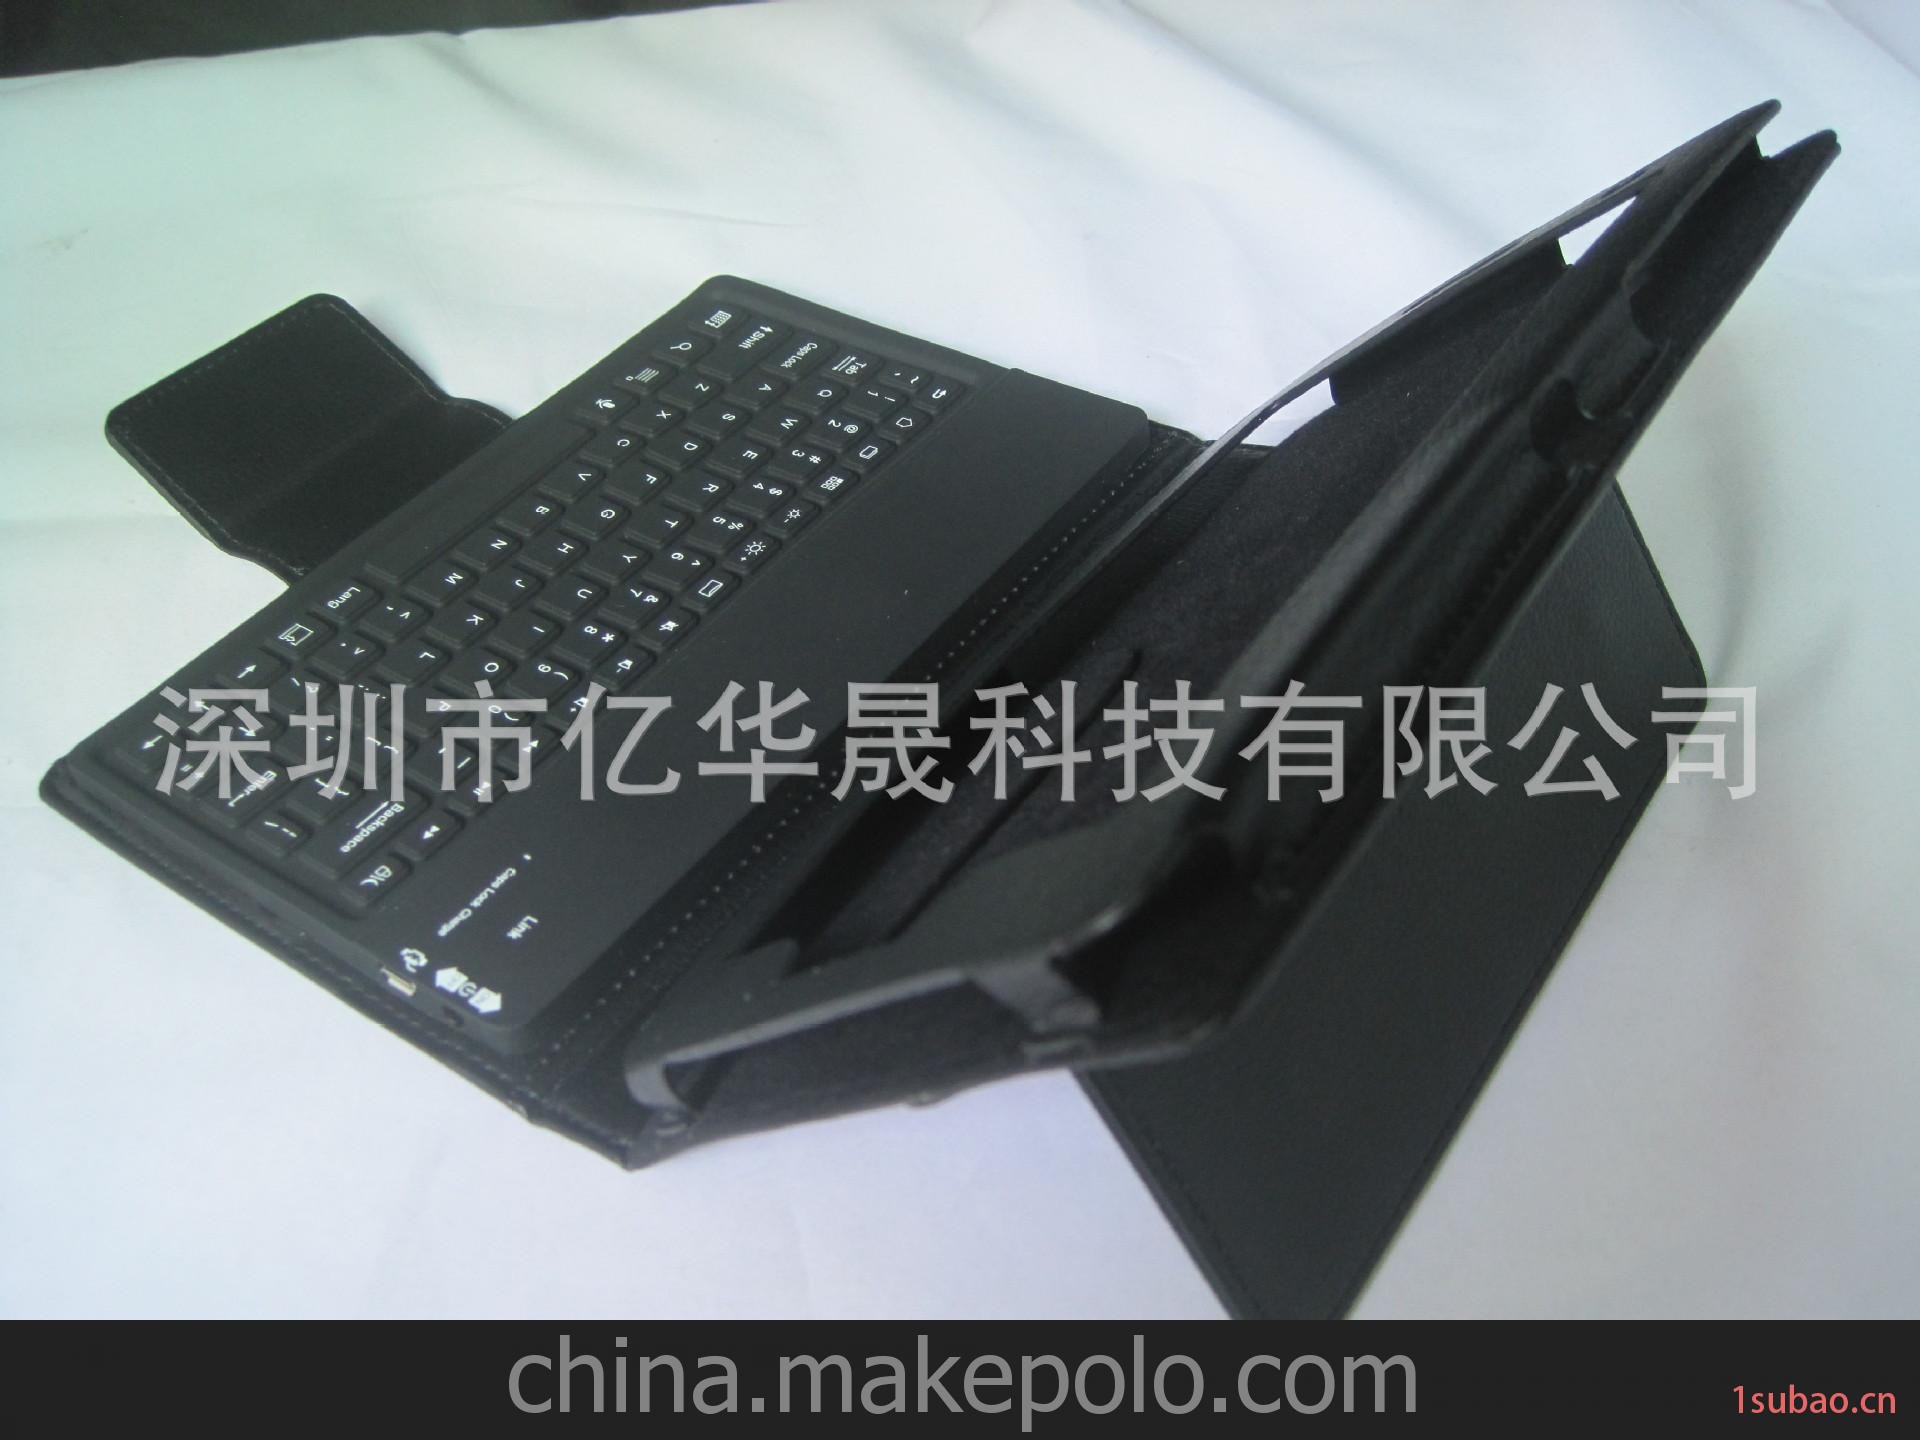 三星GALAXY Tab 3 硅胶皮套键盘 7寸平板专用 厂家直供 低价甩卖